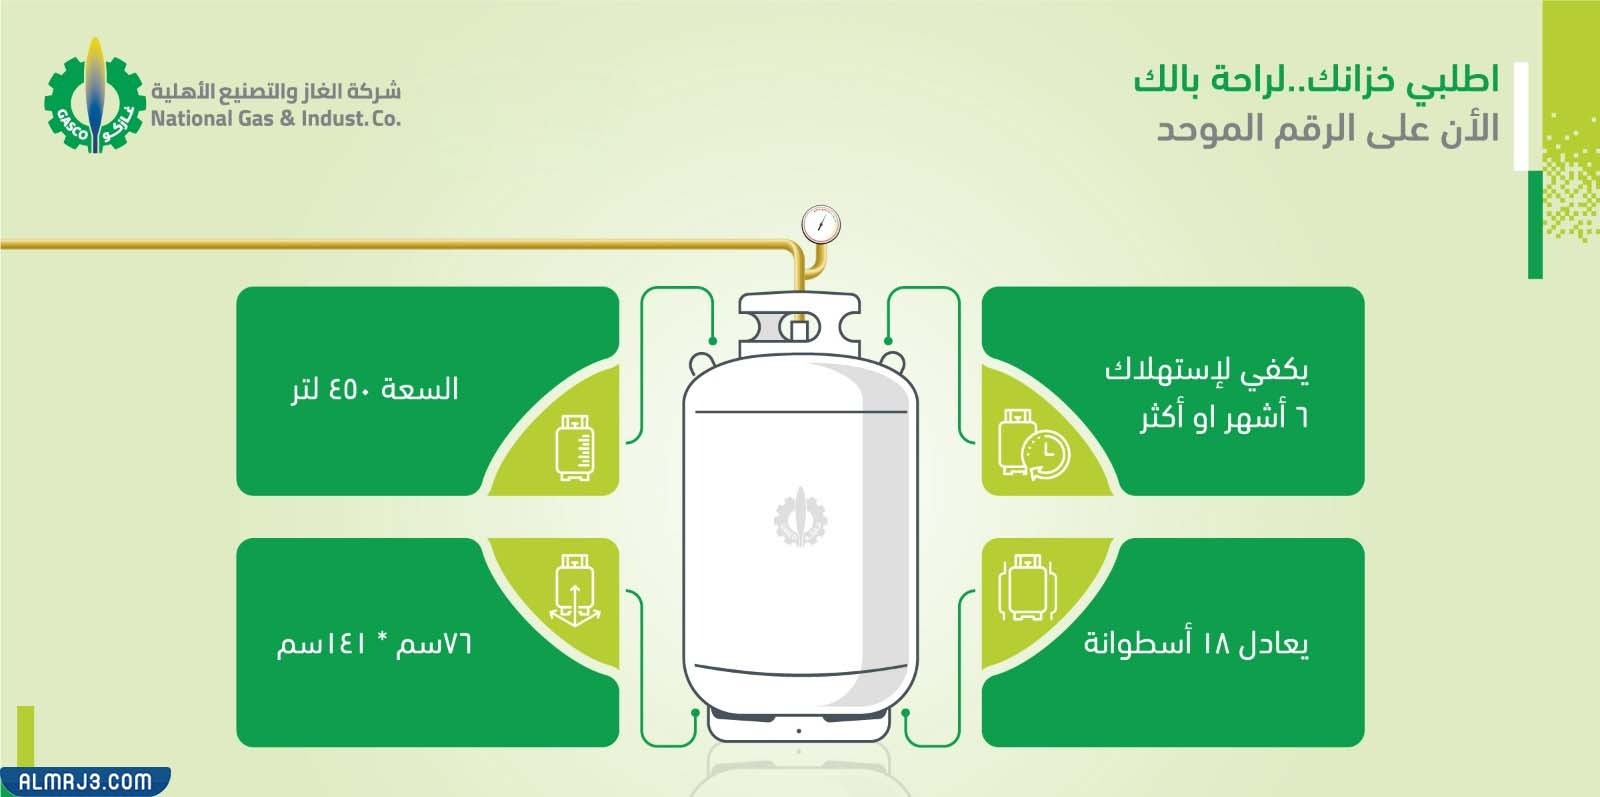 كم سعة اسطوانة الغاز في السعودية